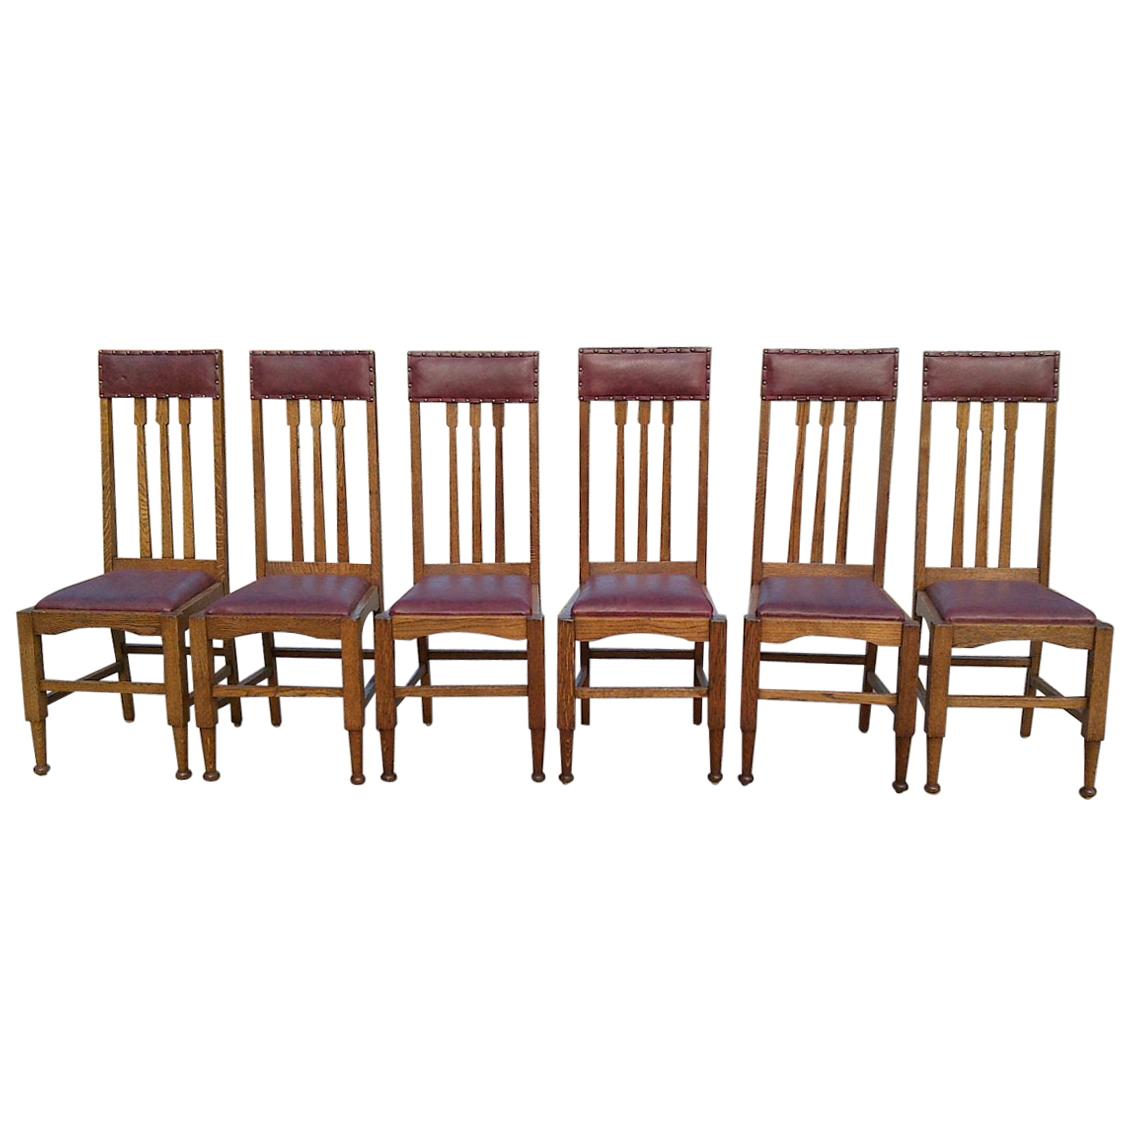 Acht Arts & Crafts-Esszimmerstühle aus Eichenholz mit hoher Rückenlehne und Ledersitzen im Glasgower Stil